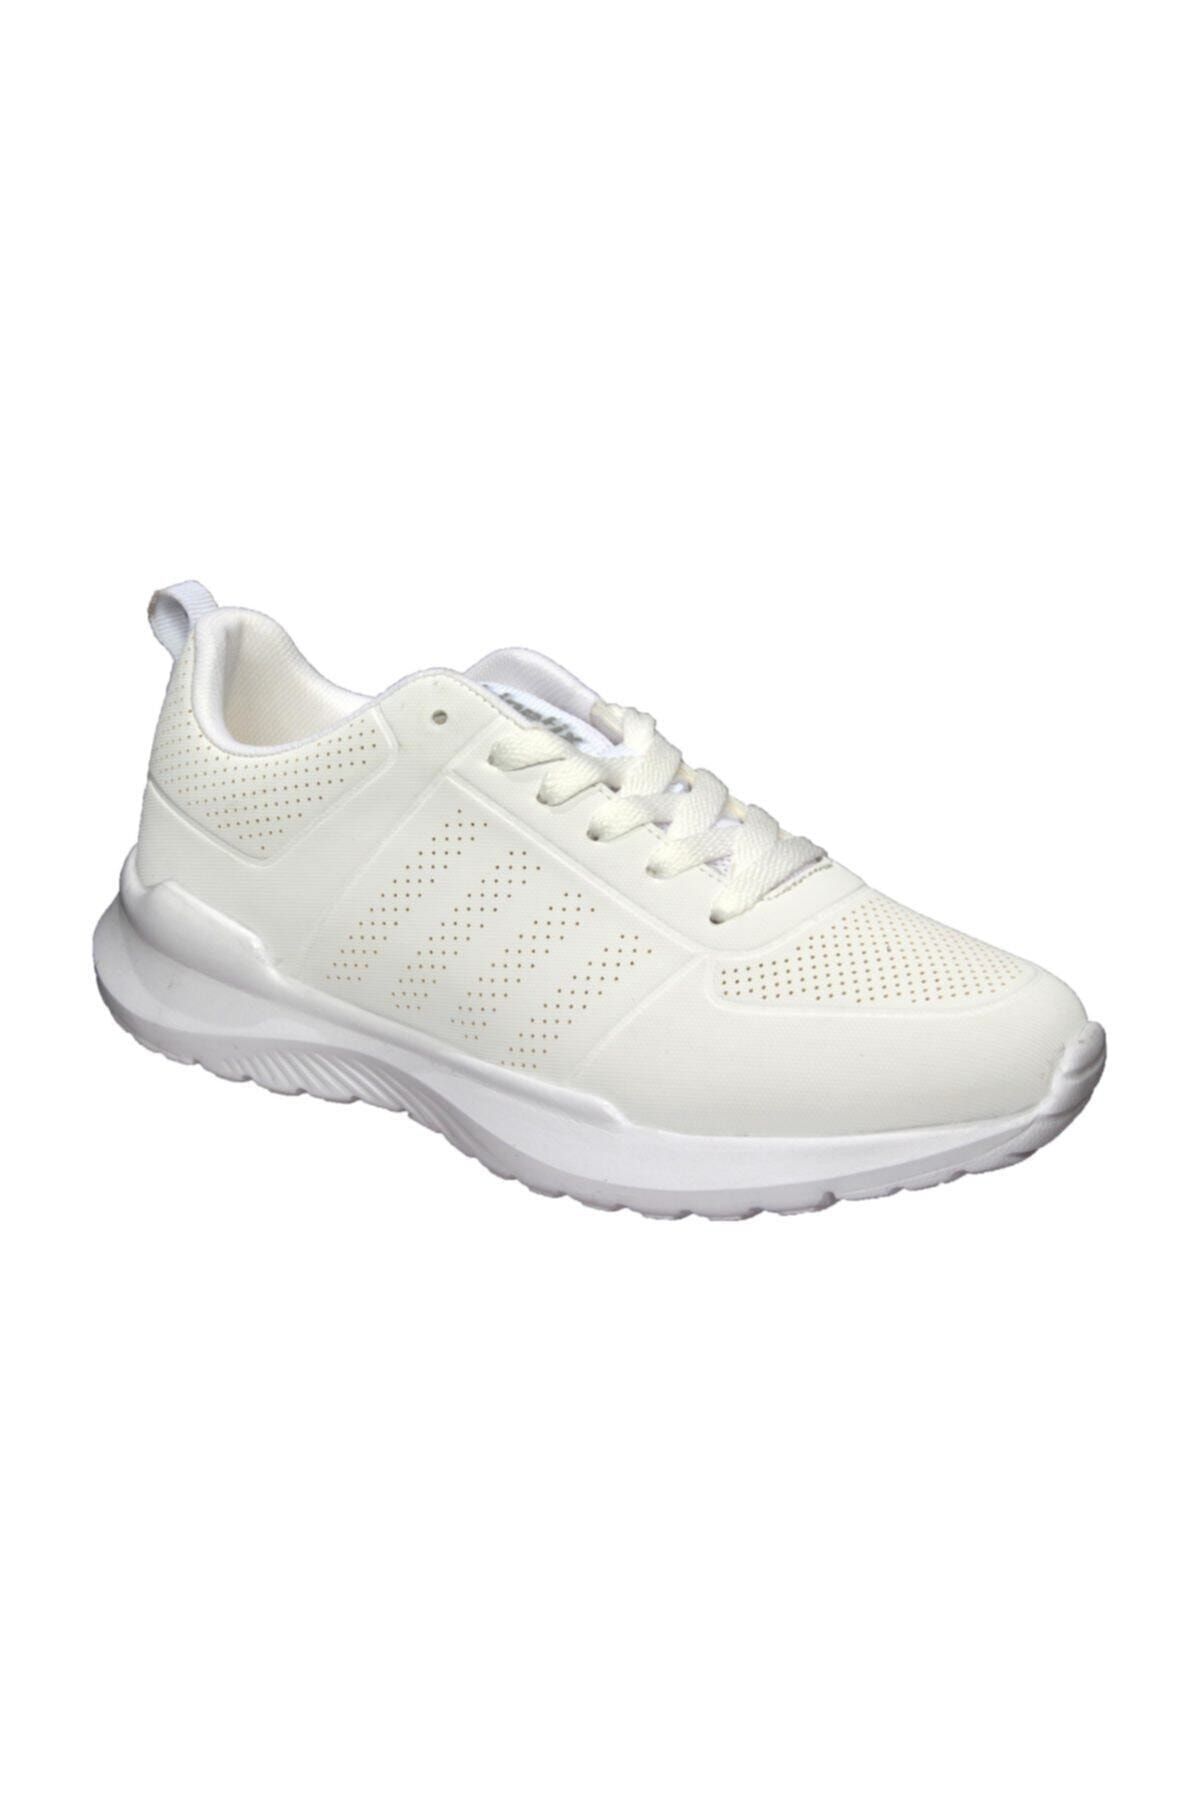 Kinetix ODAN PU M Beyaz Erkek Sneaker Ayakkabı 100483443